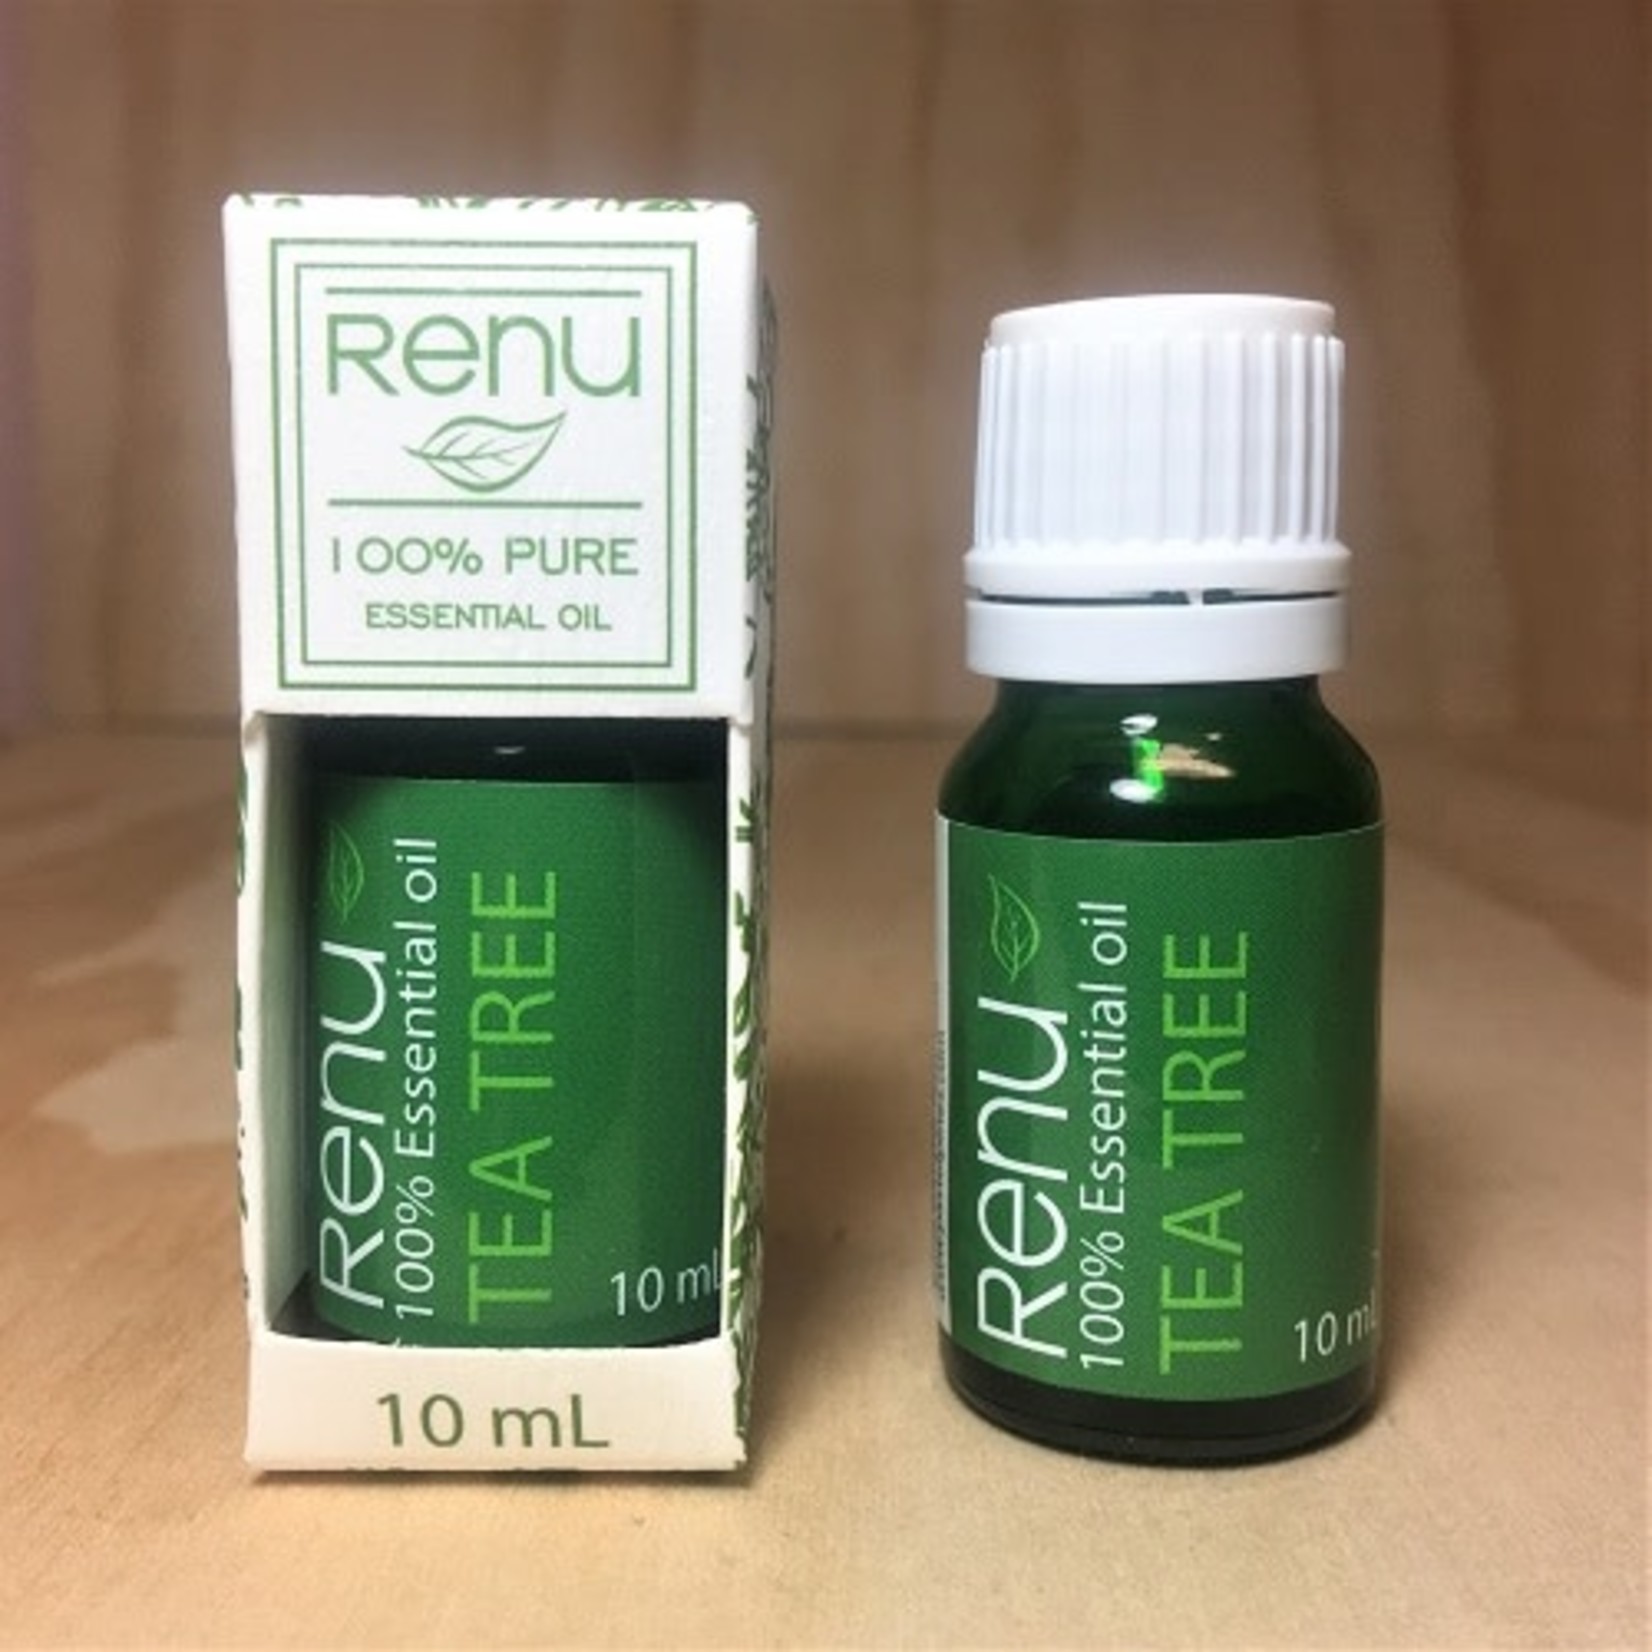 Renu Renu Pure Essential Oil 10ml